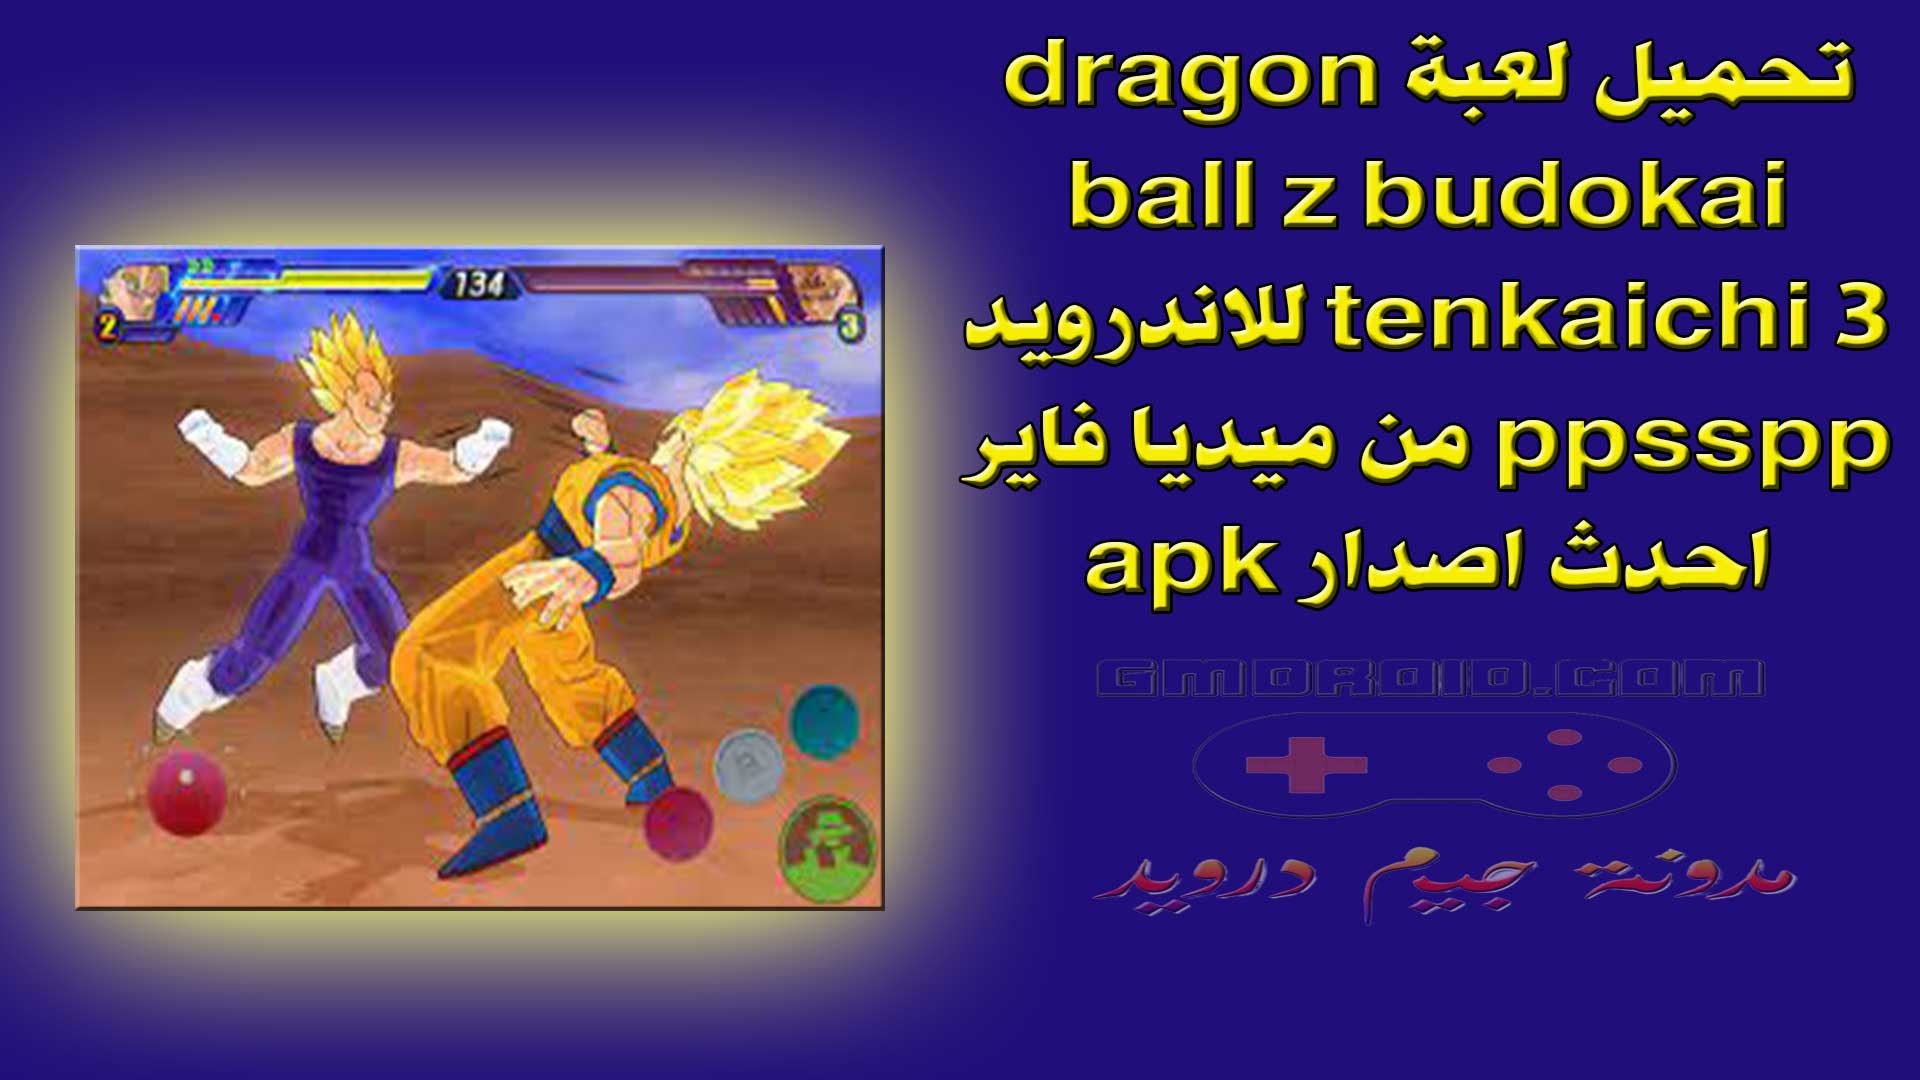 تحميل لعبة dragon ball z budokai tenkaichi 3 للاندرويد ppsspp من ميديا فاير احدث اصدار apk